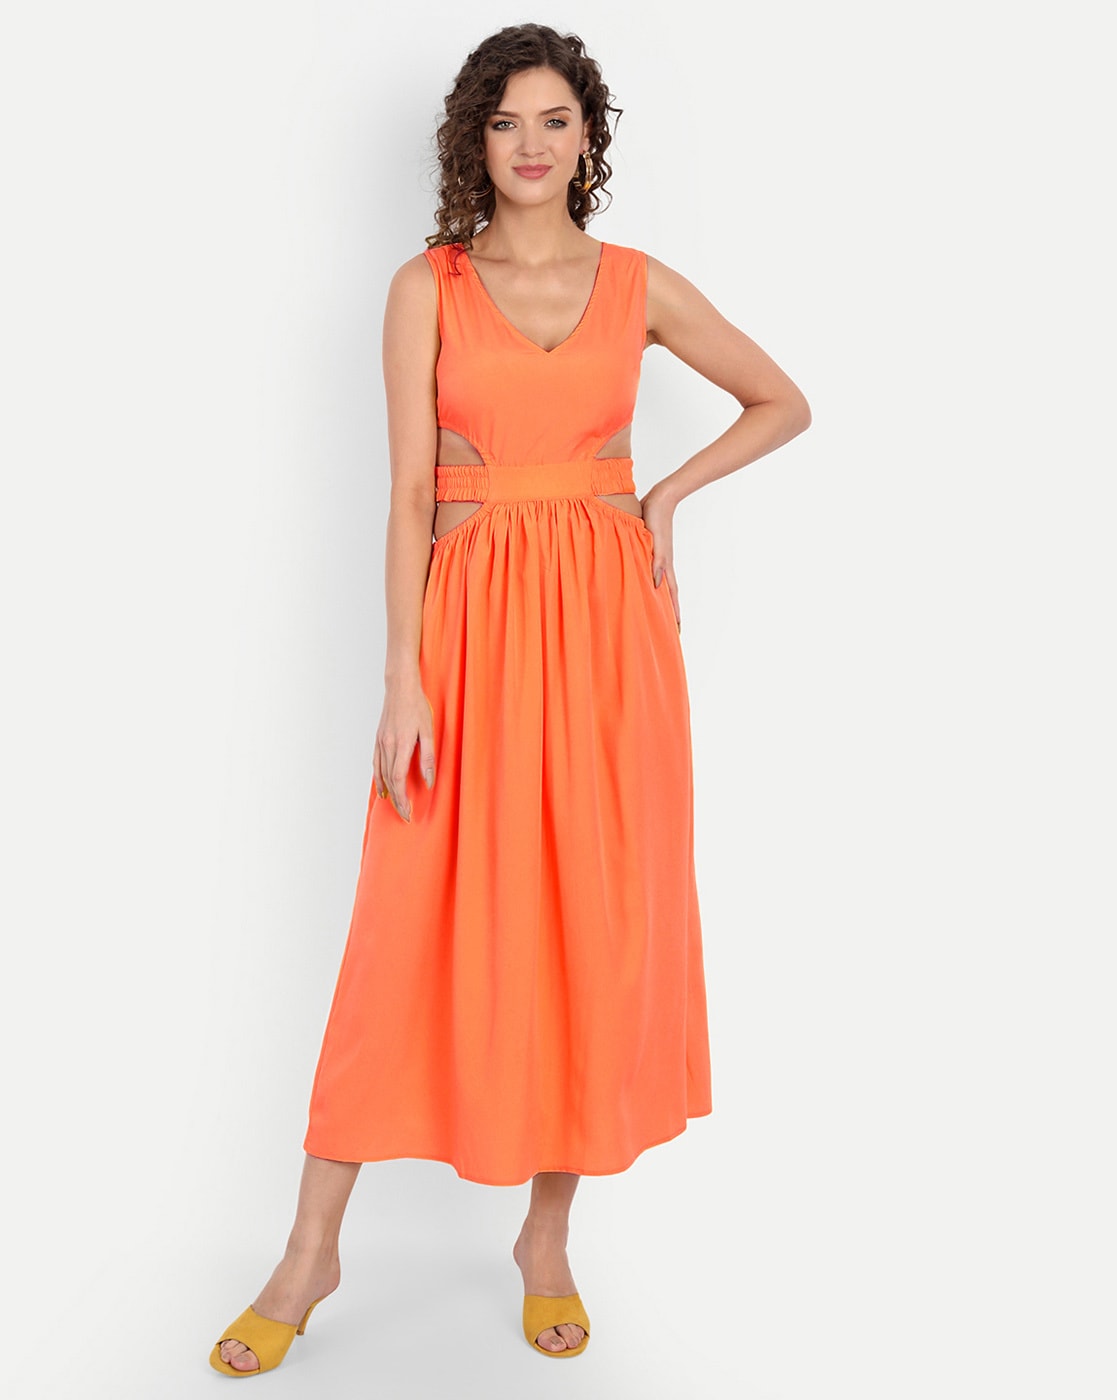 Orange : Dresses for Women : Target